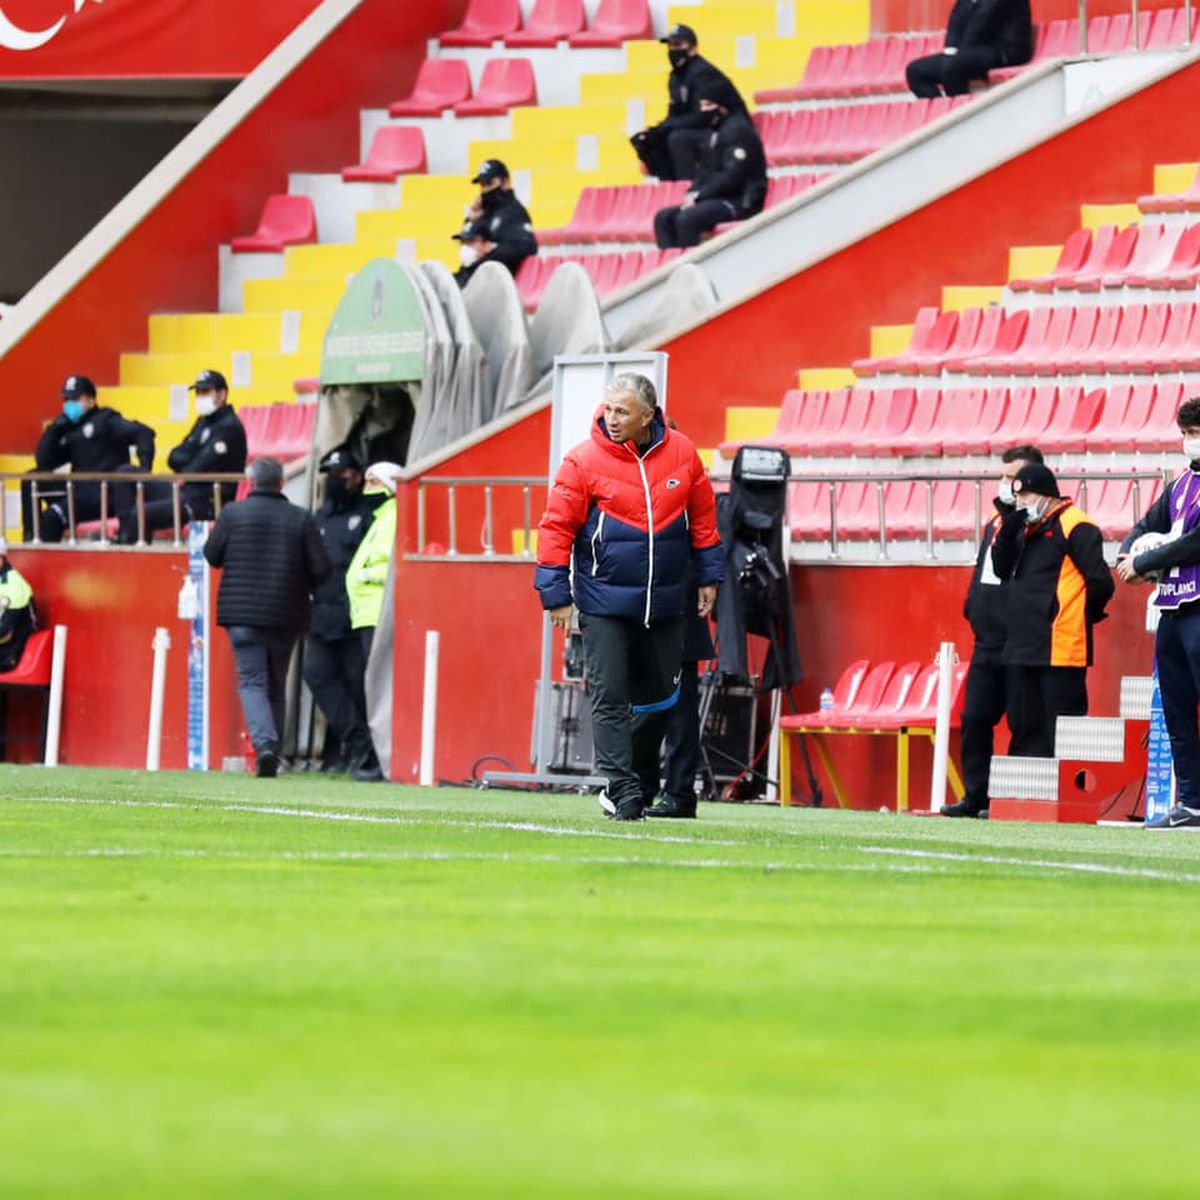 Kayserispor - Alanyaspor 1-1 » Echipa lui Dan Petrescu ratează a doua victorie consecutivă: Săpunaru a fost eliminat